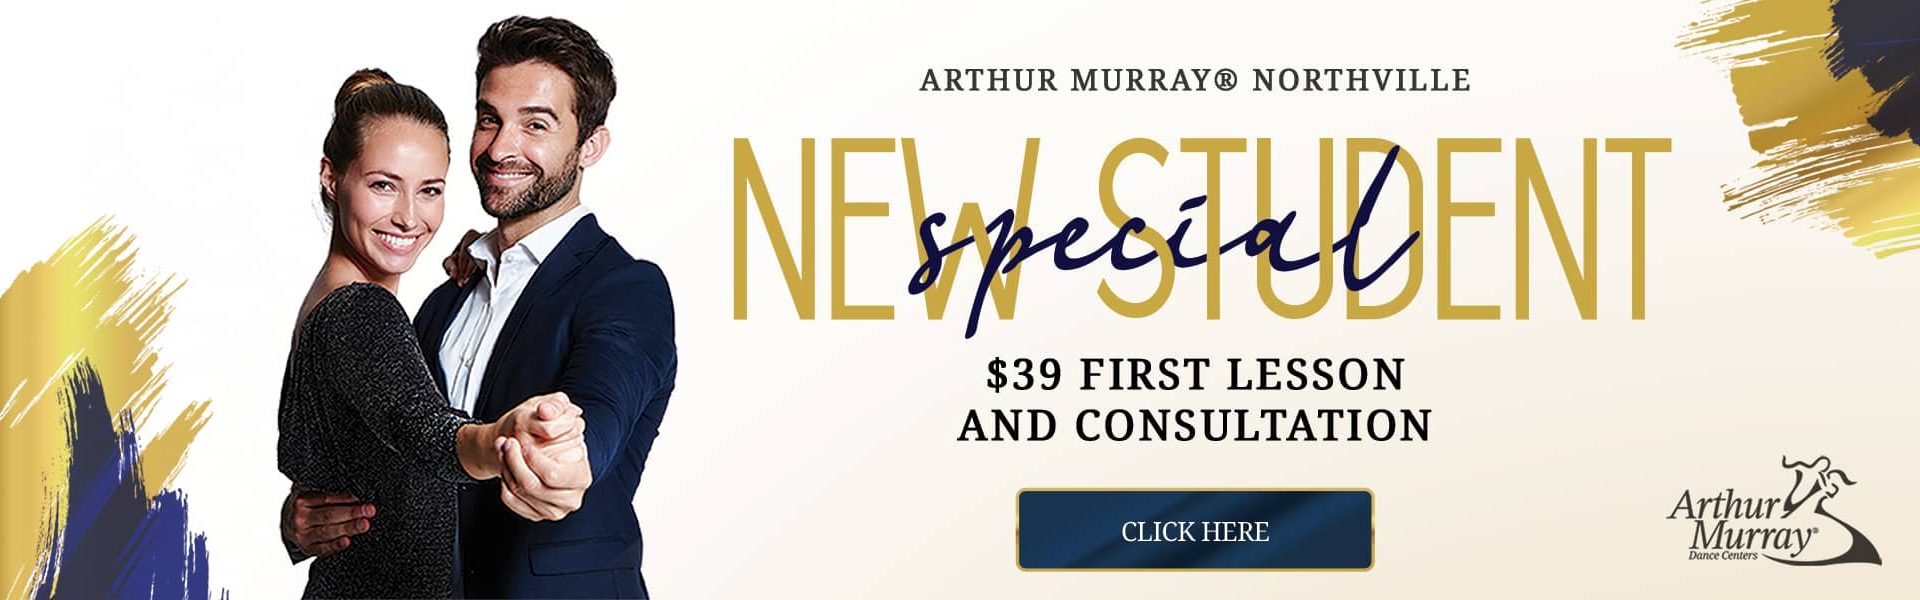 Arthur Murray Northville New Student Offer